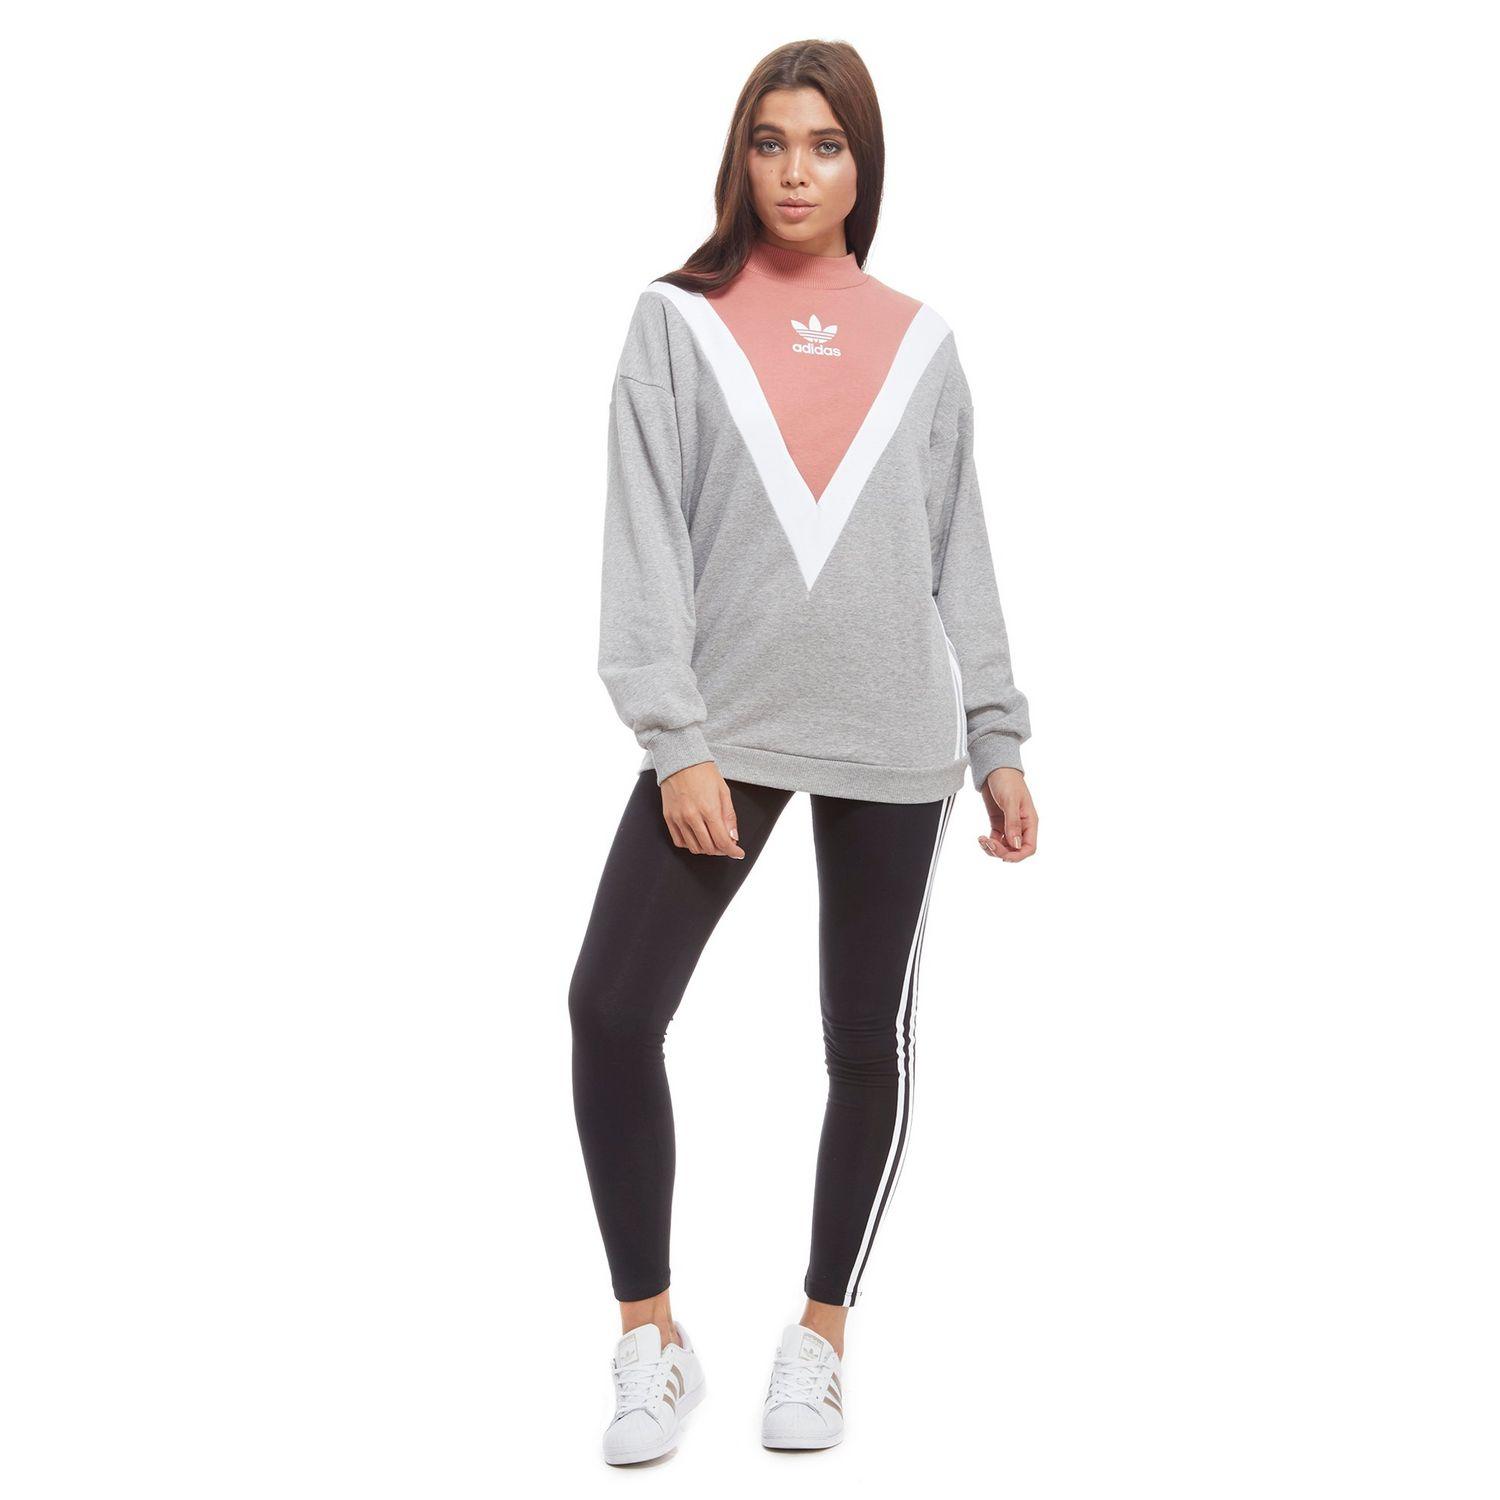 adidas Originals Chevron Sweatshirt in Grey/White/Pink (Grey) - Lyst